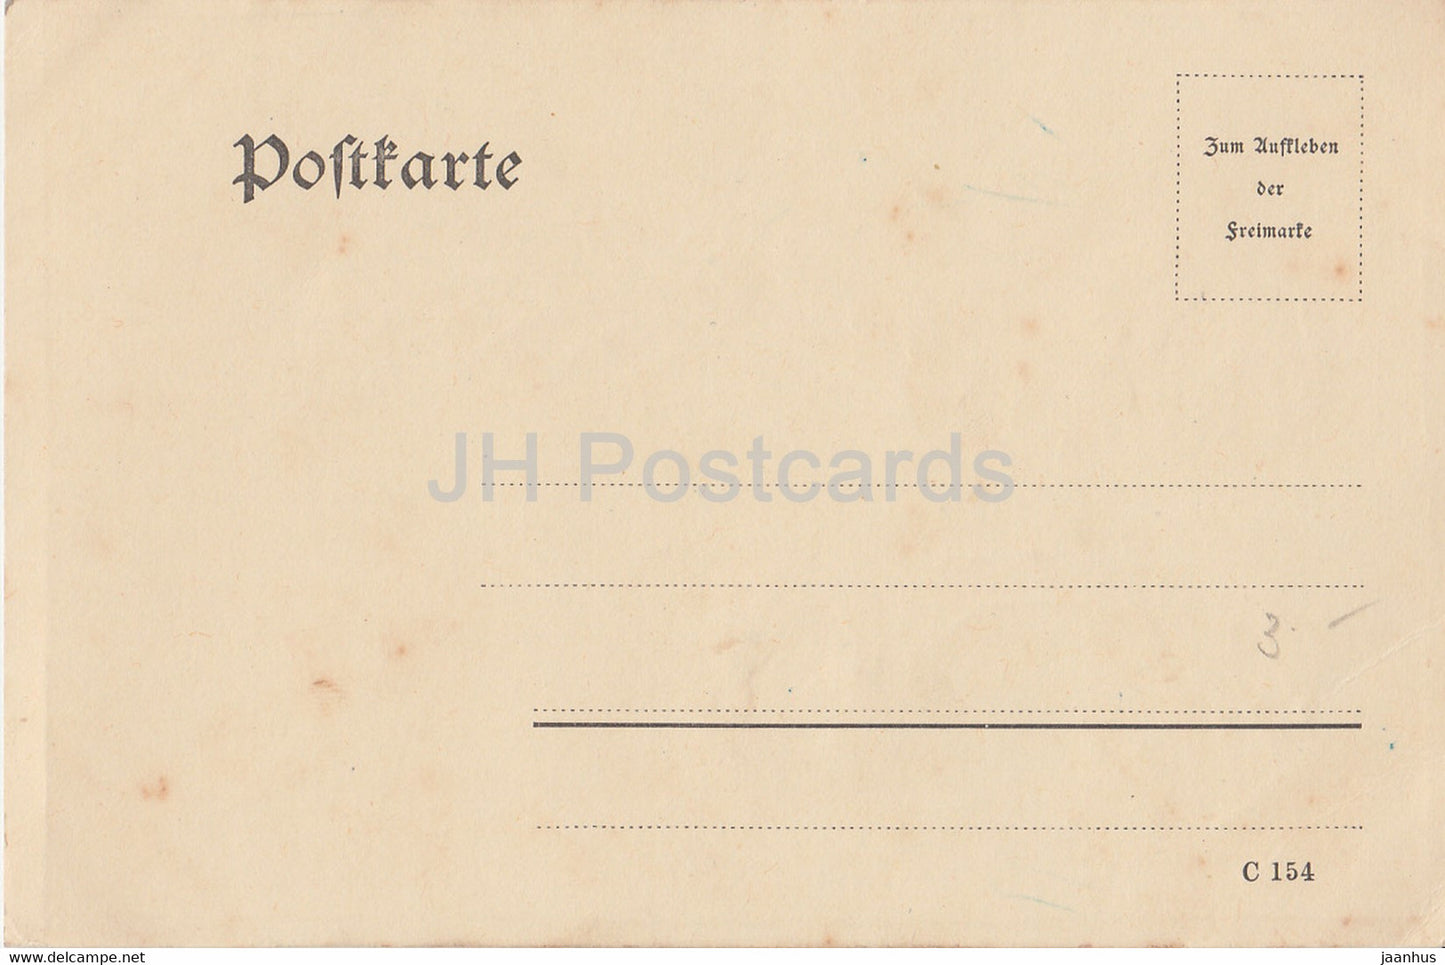 Carte de vœux - C 154 - fleurs - carte postale ancienne - Allemagne - inutilisée